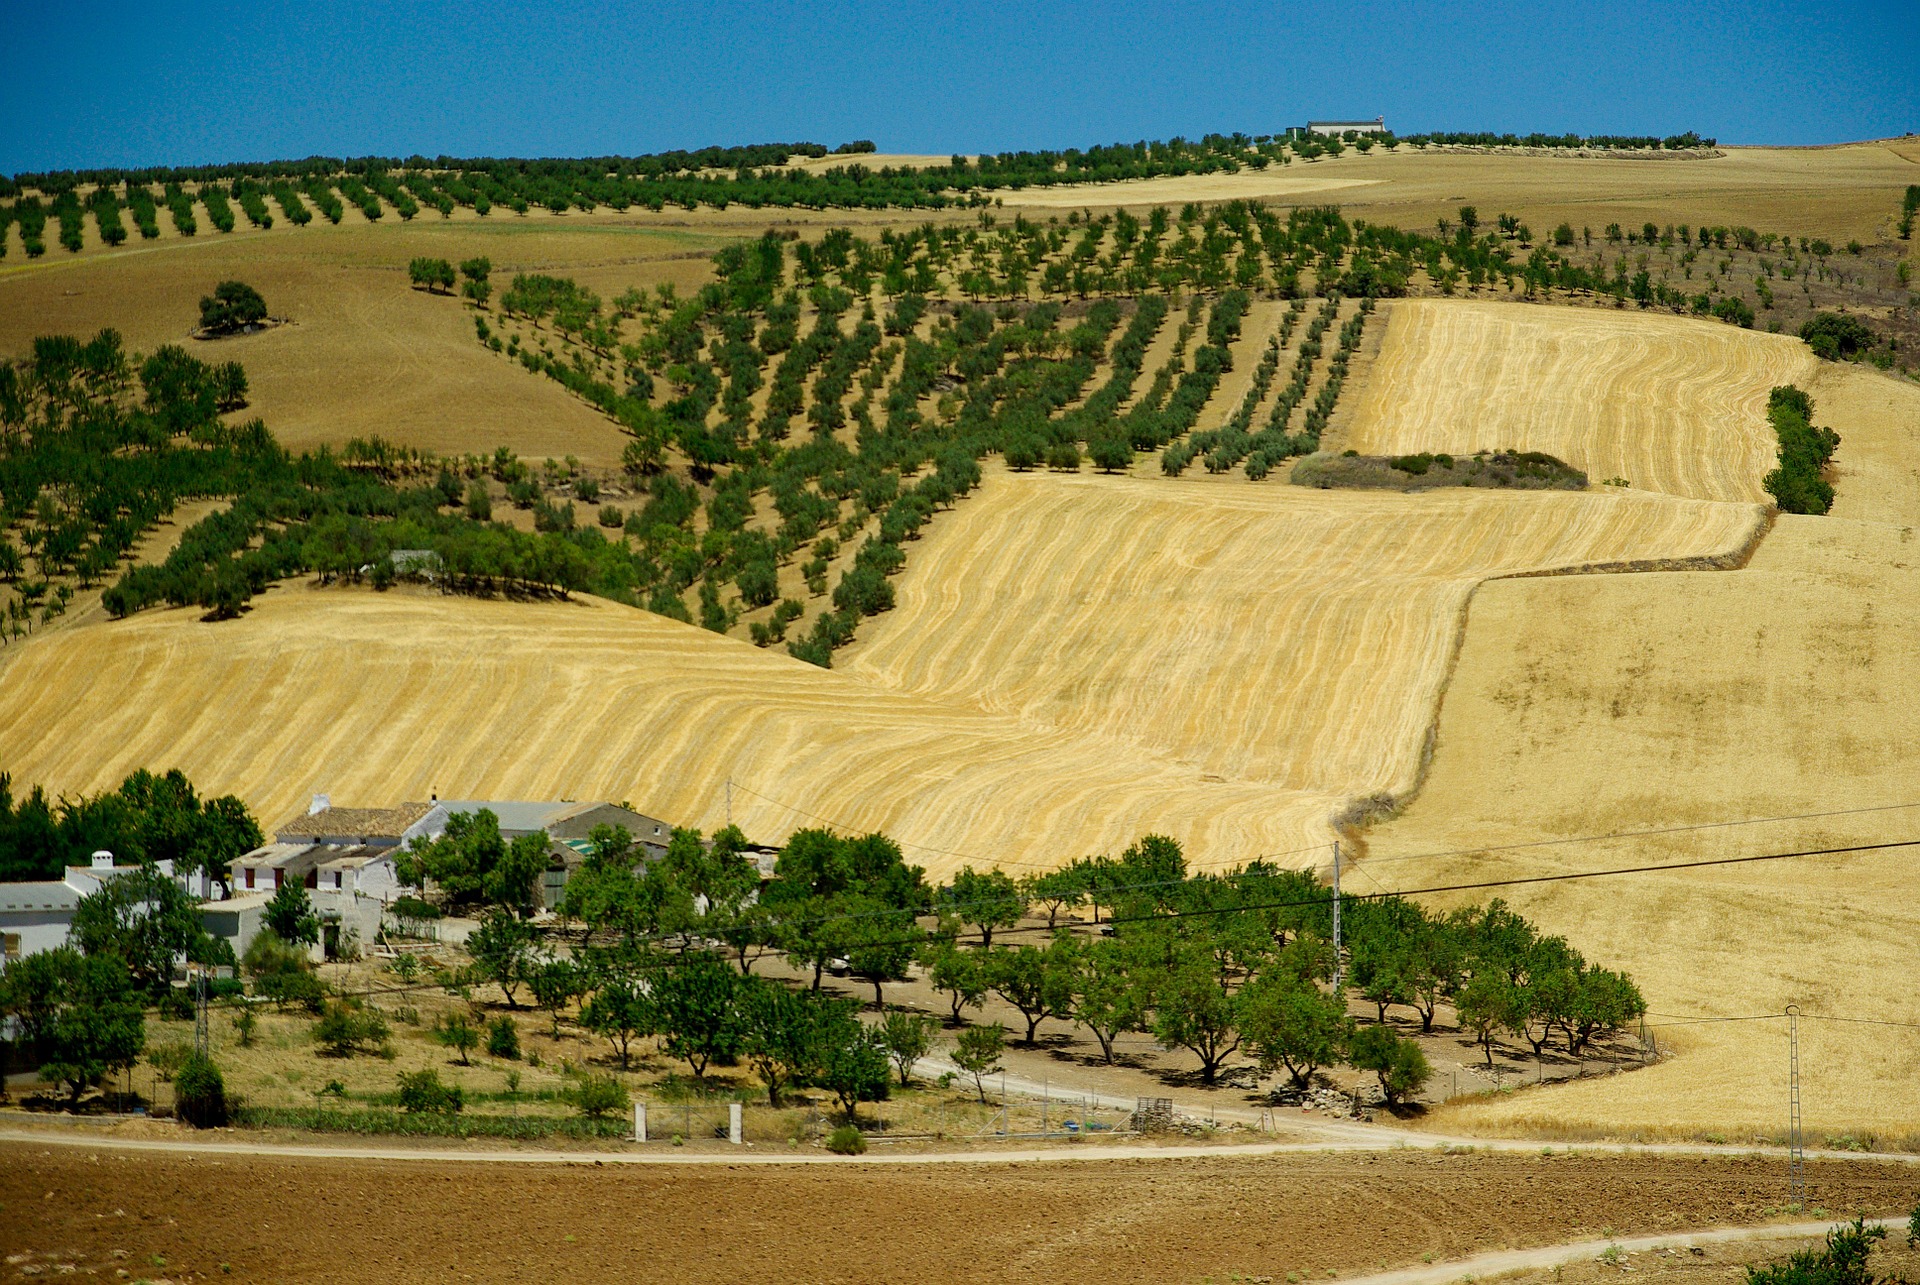 Ein "Hazienda" (Landgut) in Andalusien, dessen Bewirtschaftung sich hier durch etliche Olivenbäume kennzeichnet